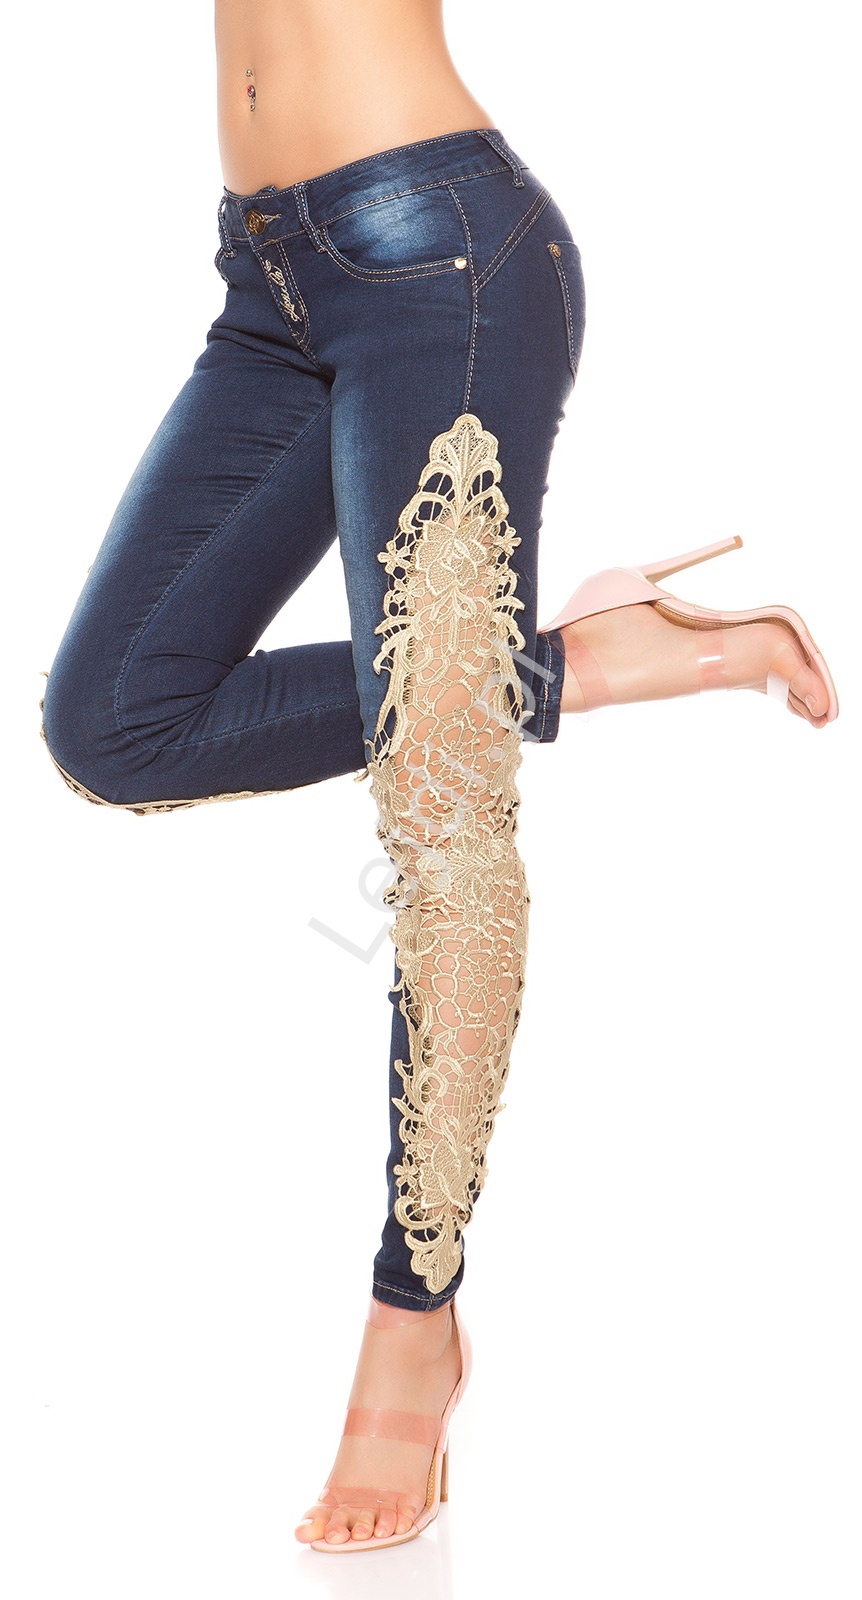 Jeansy modelujące sylwetkę ze złotą gipiurową koronką, biodrówki, wyszczuplające